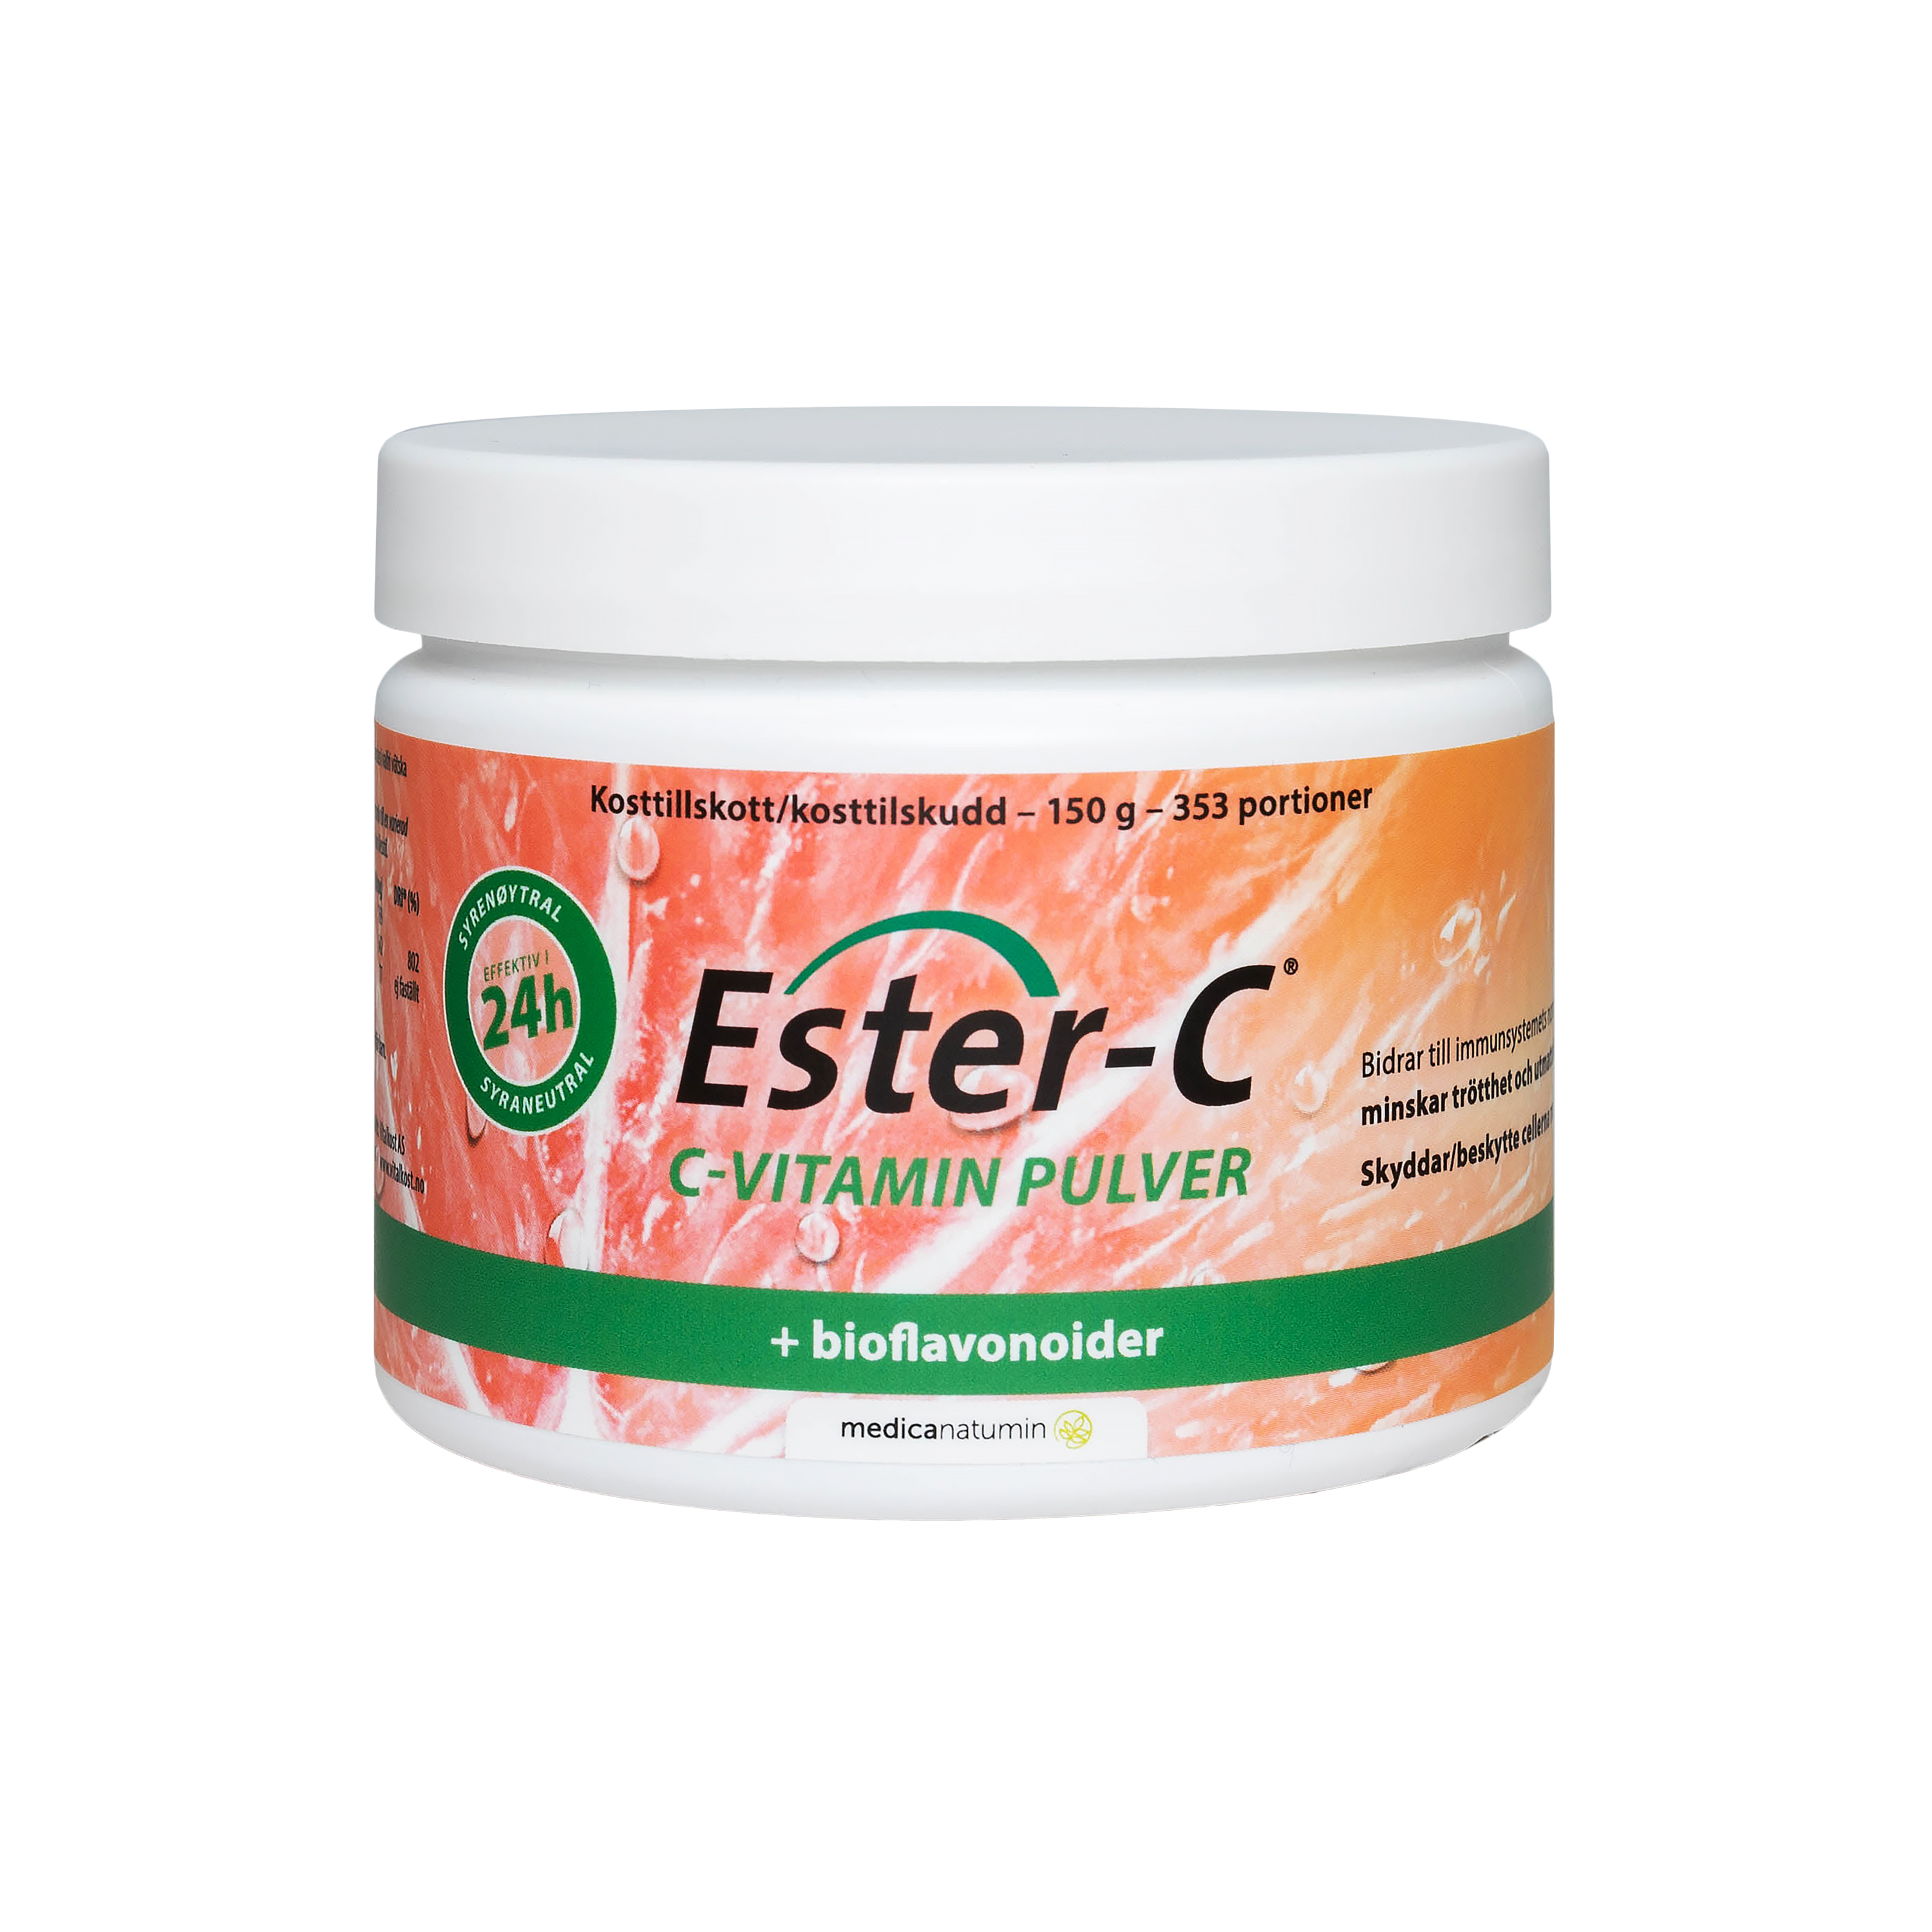 Ester-C C-vitamin pulver 150 g